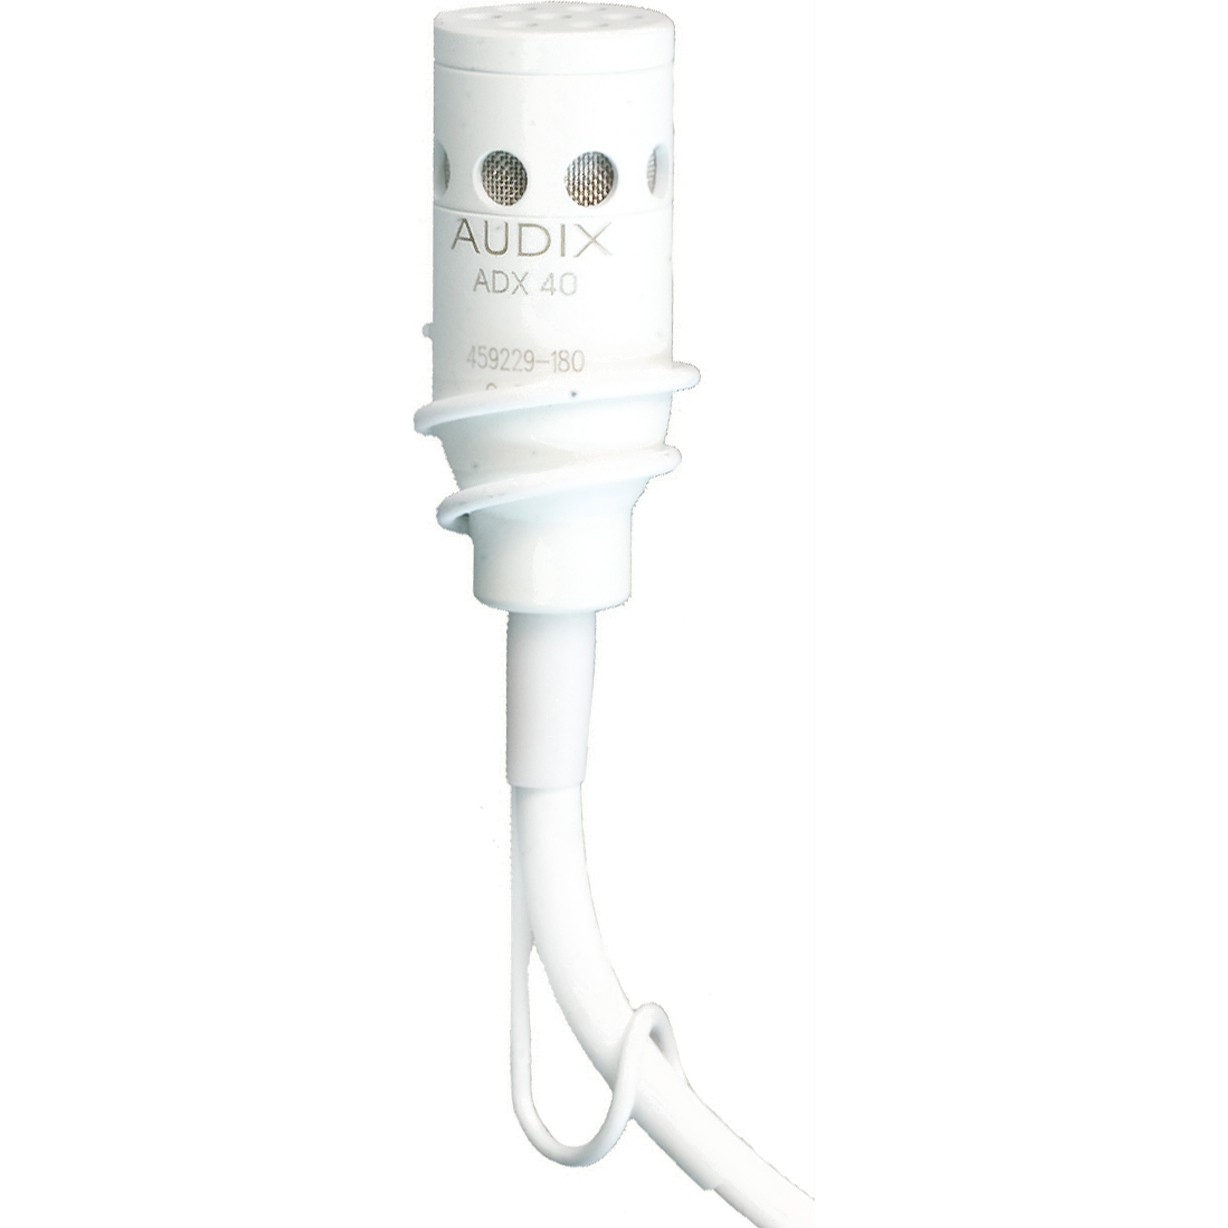 Студийные микрофоны AUDIX ADX40WHC микрофон mobicent bm 800 с ветрозащитой кабелем и переходником для телефона на треноге